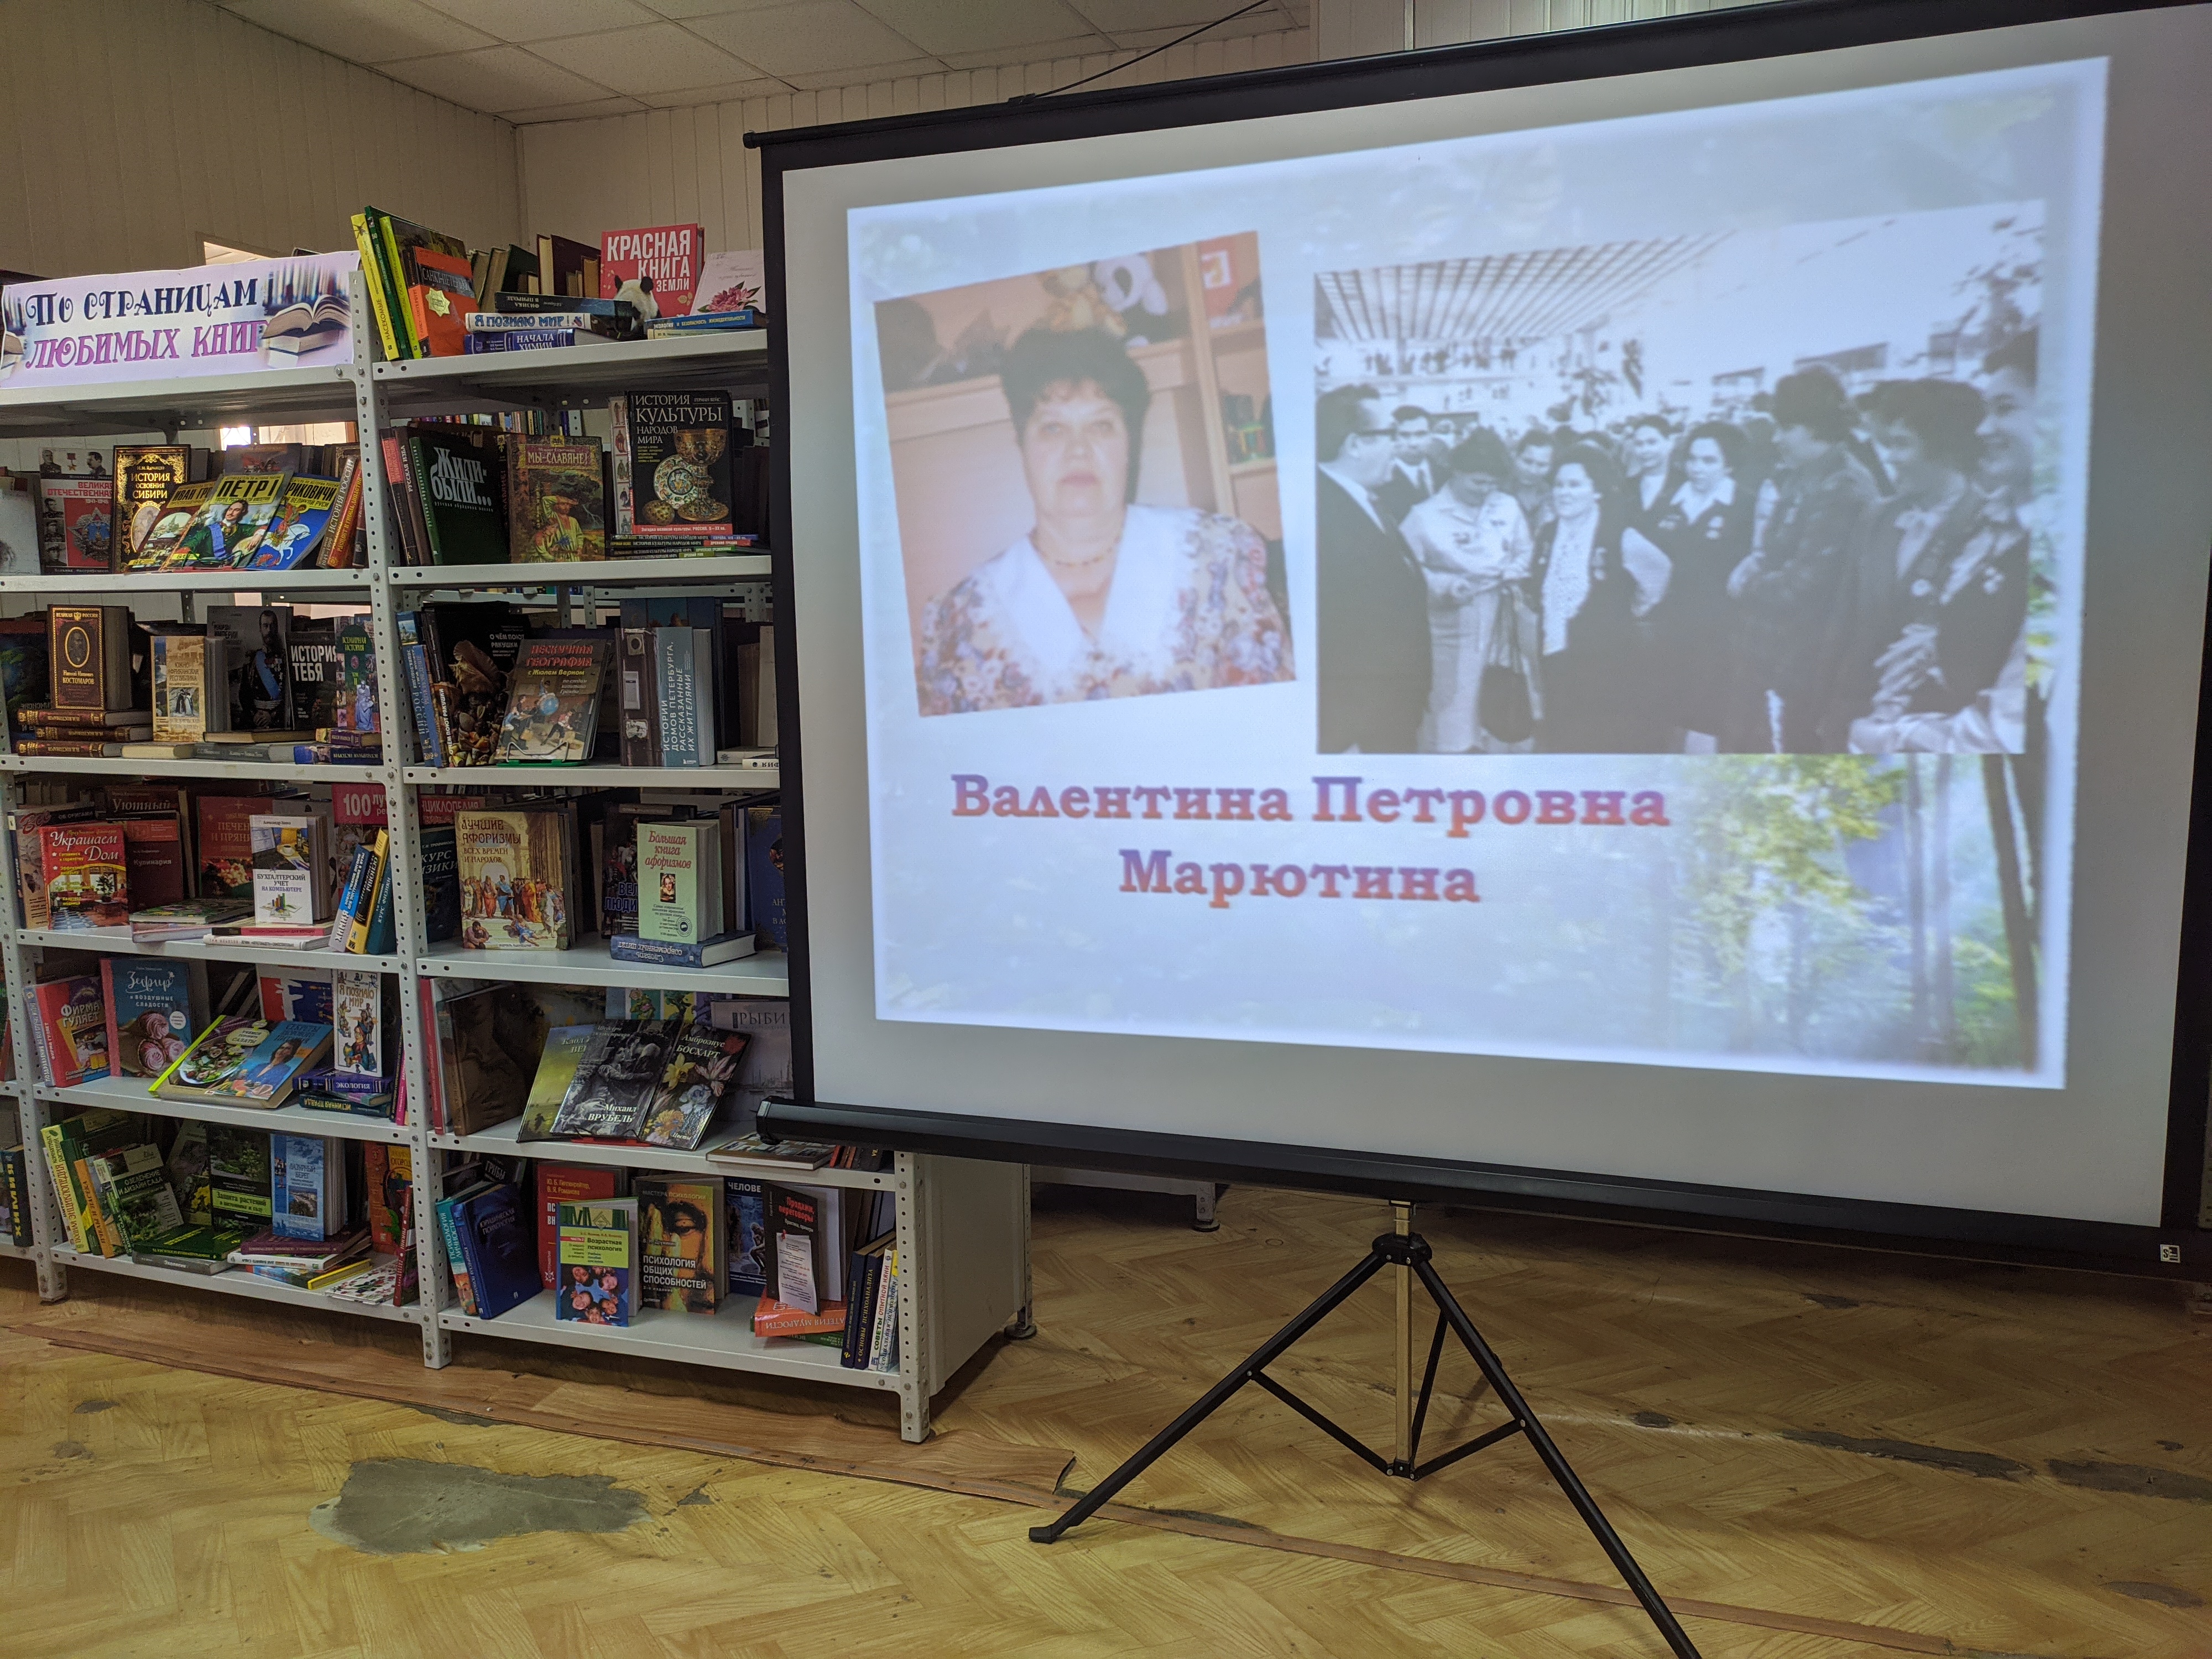 Презентация книг "Бизяевка" и "Маевка". авто Олег Евсеев. фото: Алсу Зиганьшина